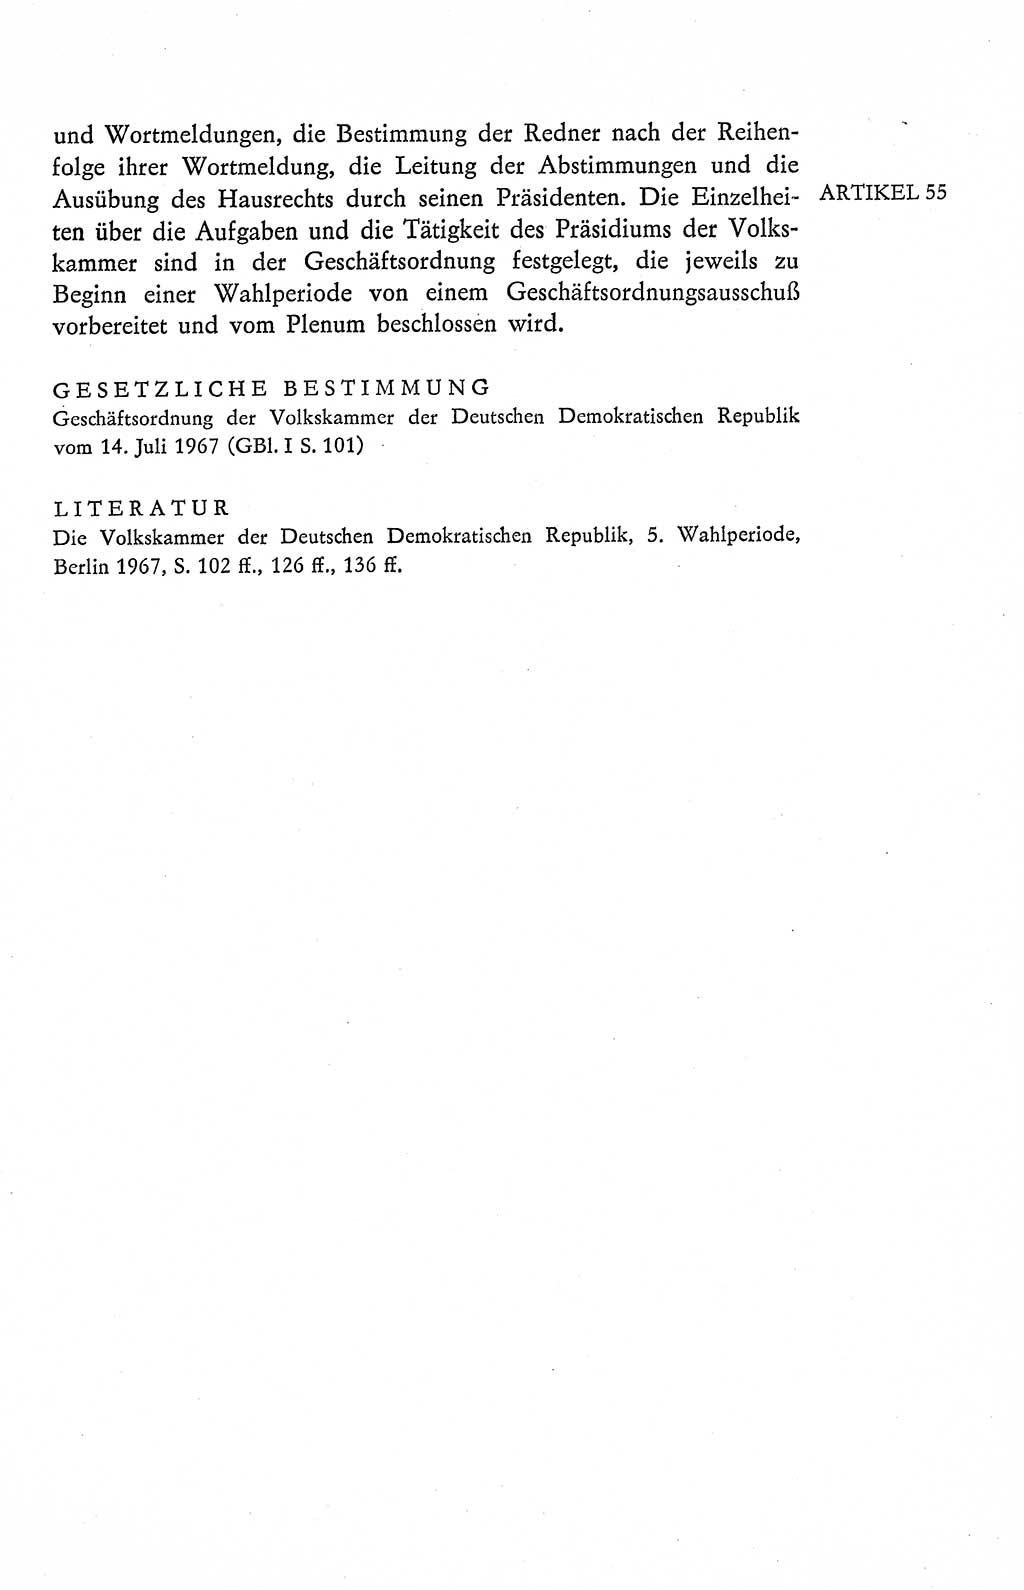 Verfassung der Deutschen Demokratischen Republik (DDR), Dokumente, Kommentar 1969, Band 2, Seite 271 (Verf. DDR Dok. Komm. 1969, Bd. 2, S. 271)